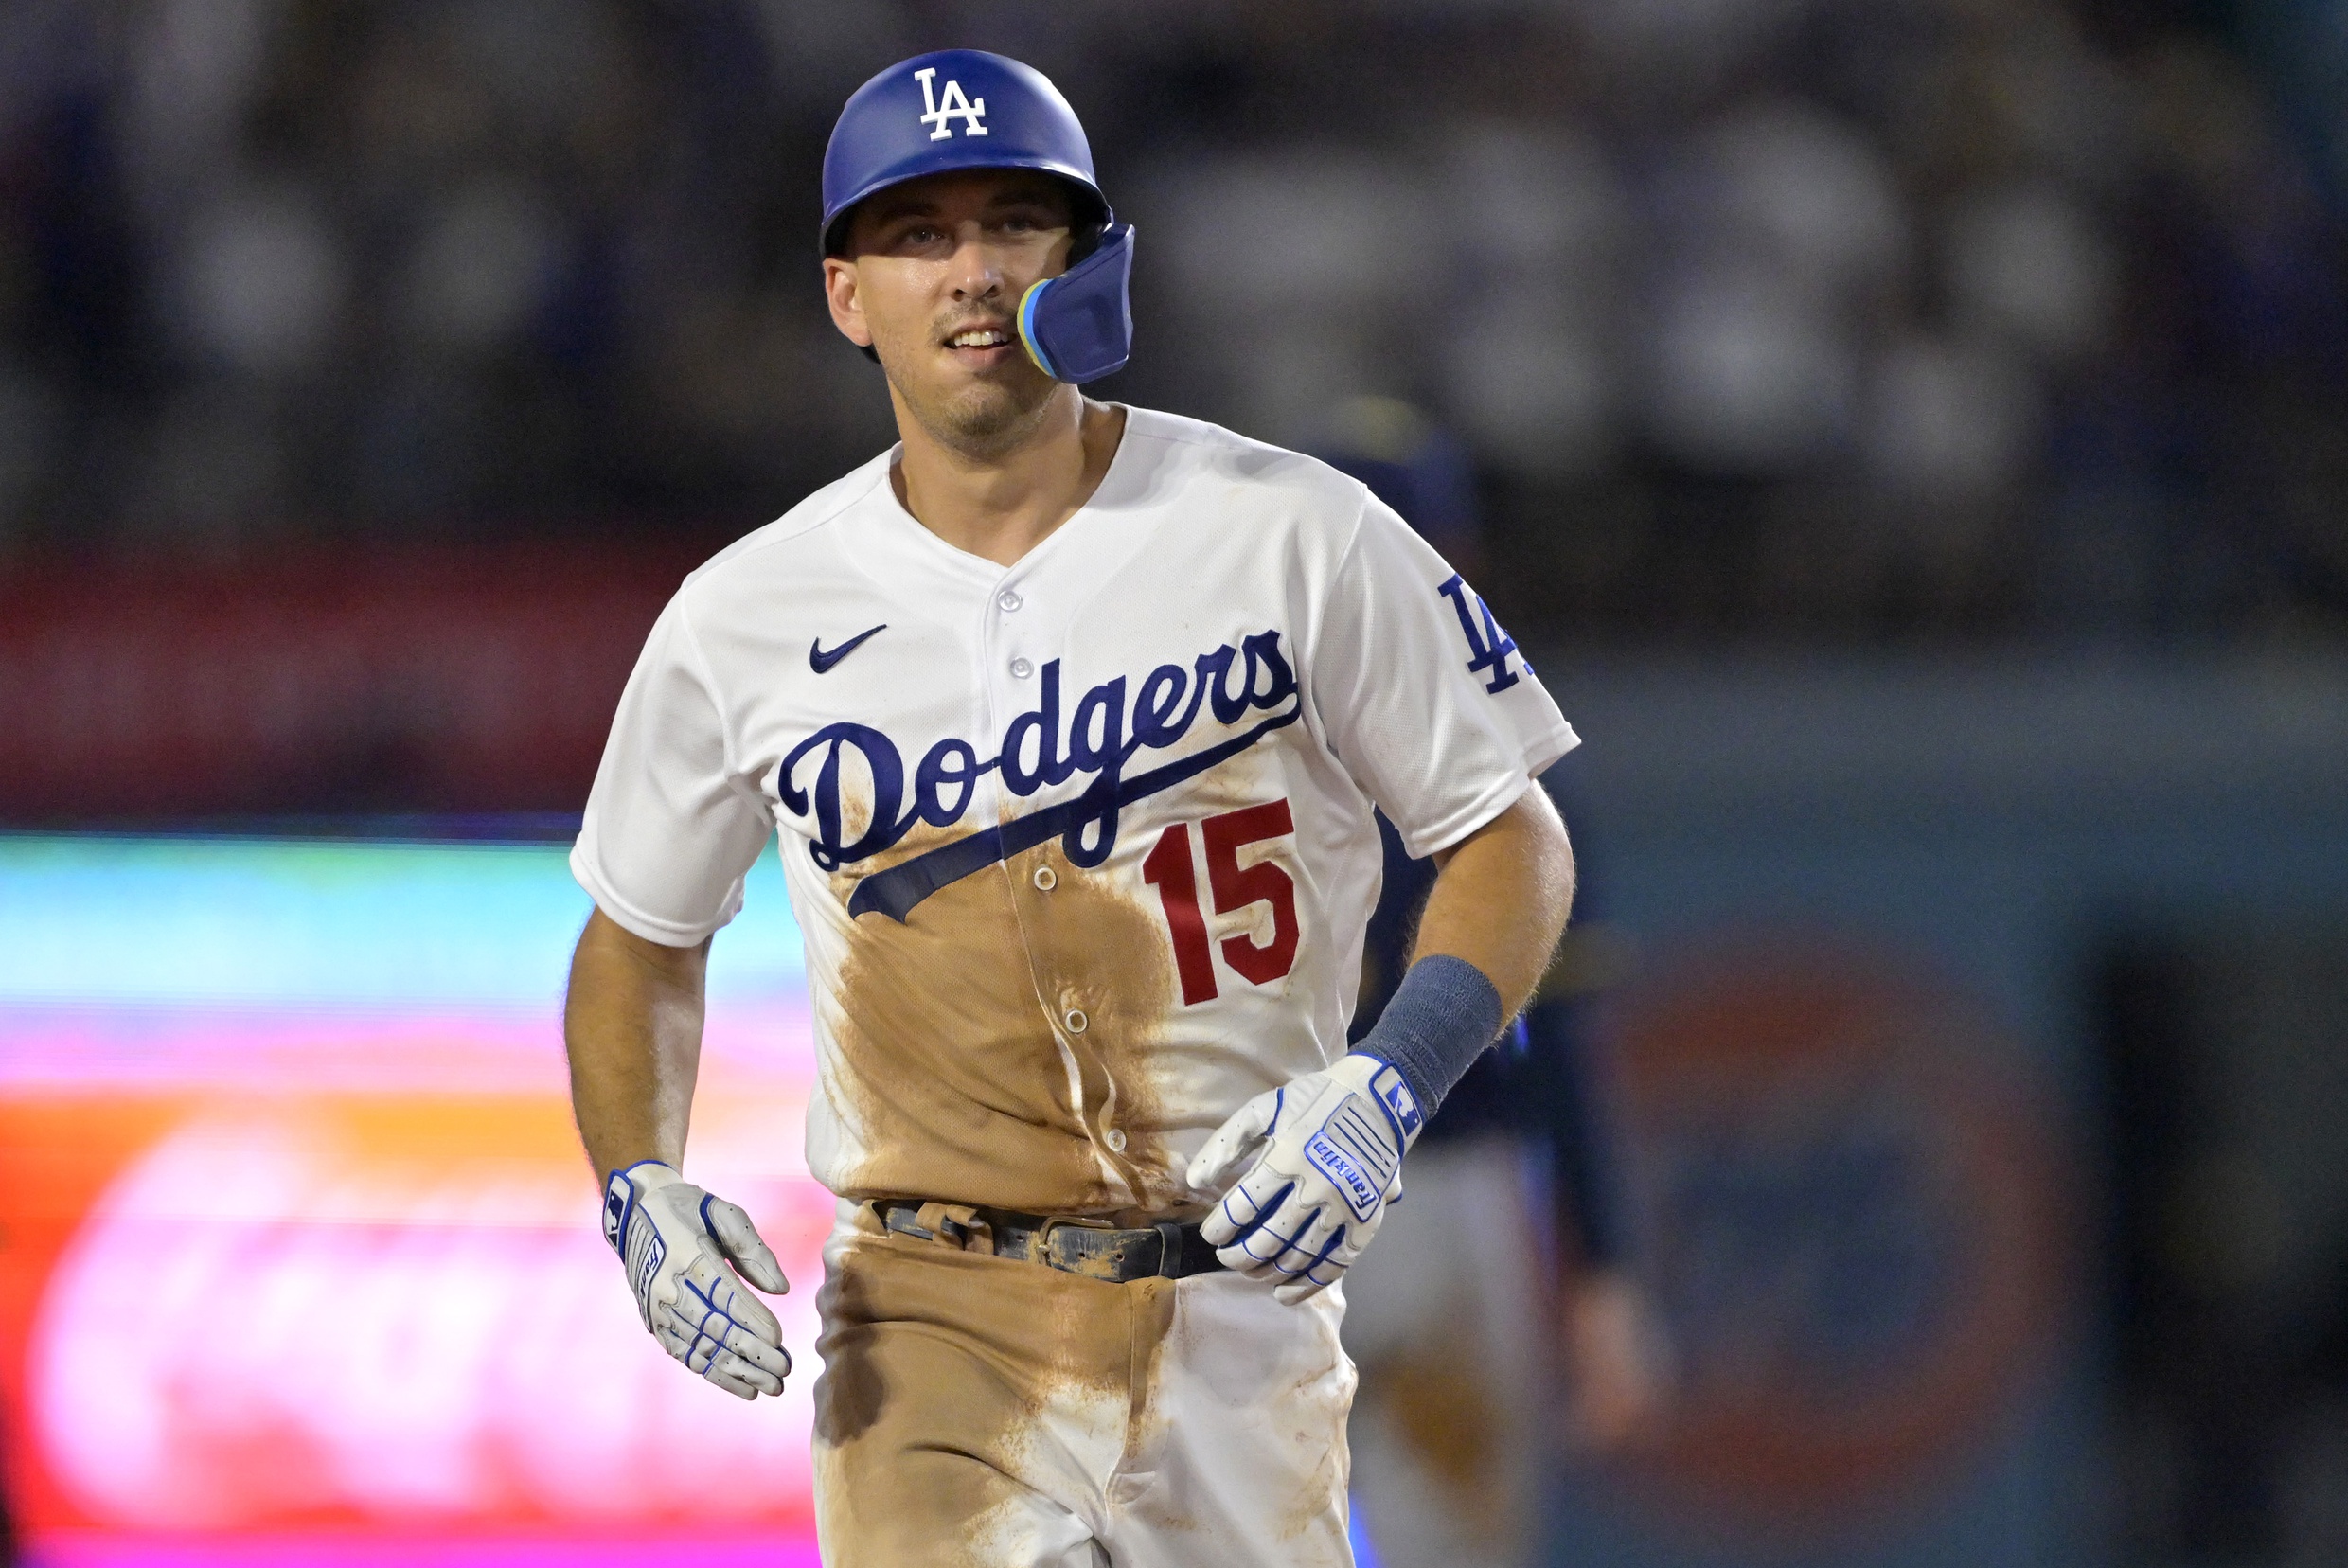 Dodgers' catcher Austin Barnes' Riverside roots run deep – Daily News